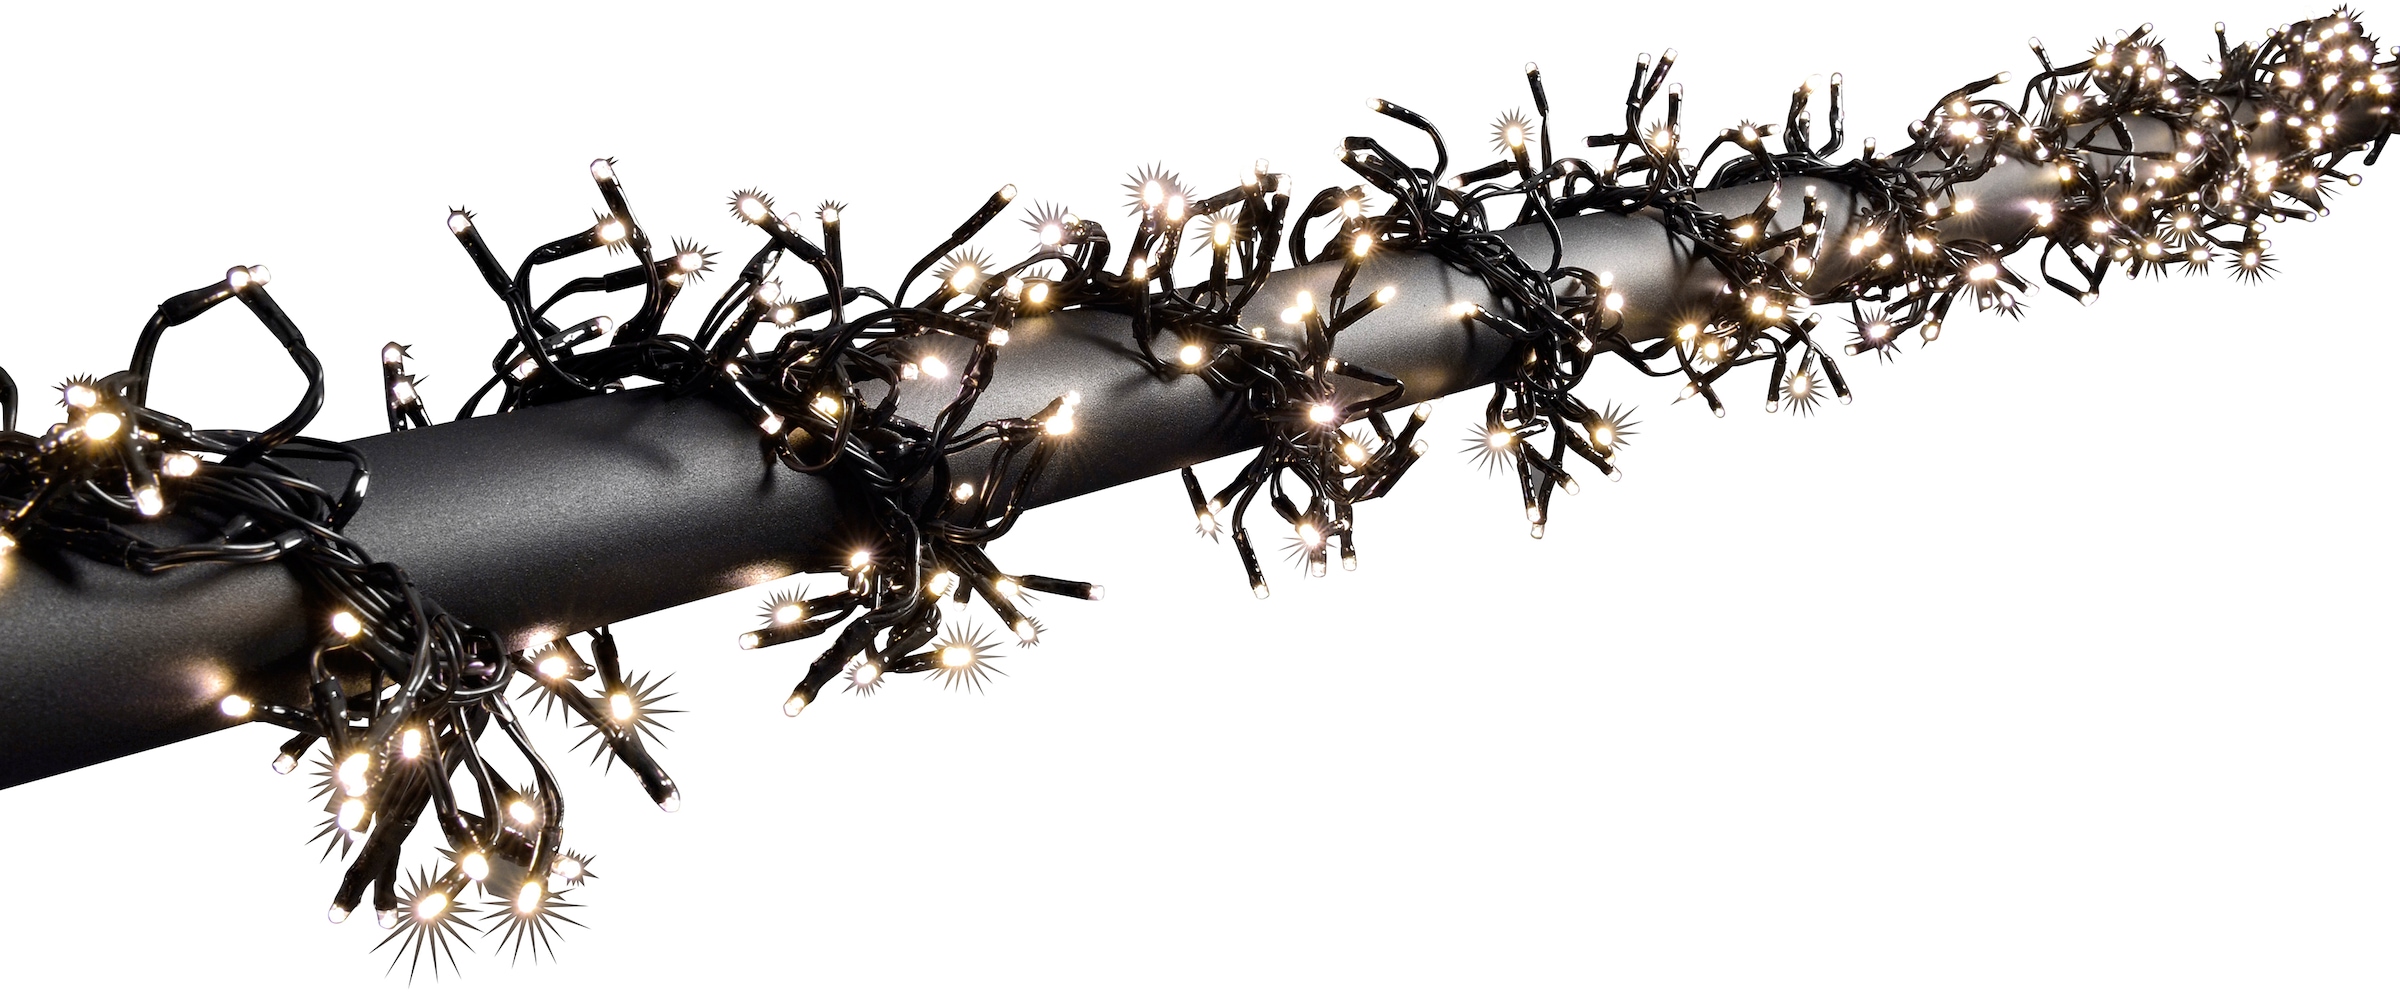 KONSTSMIDE LED-Lichterkette »Büschellichterkette Cluster, Weihnachtsdeko aussen«, mit 8 Funktionen und 1152 warmweißen Dioden